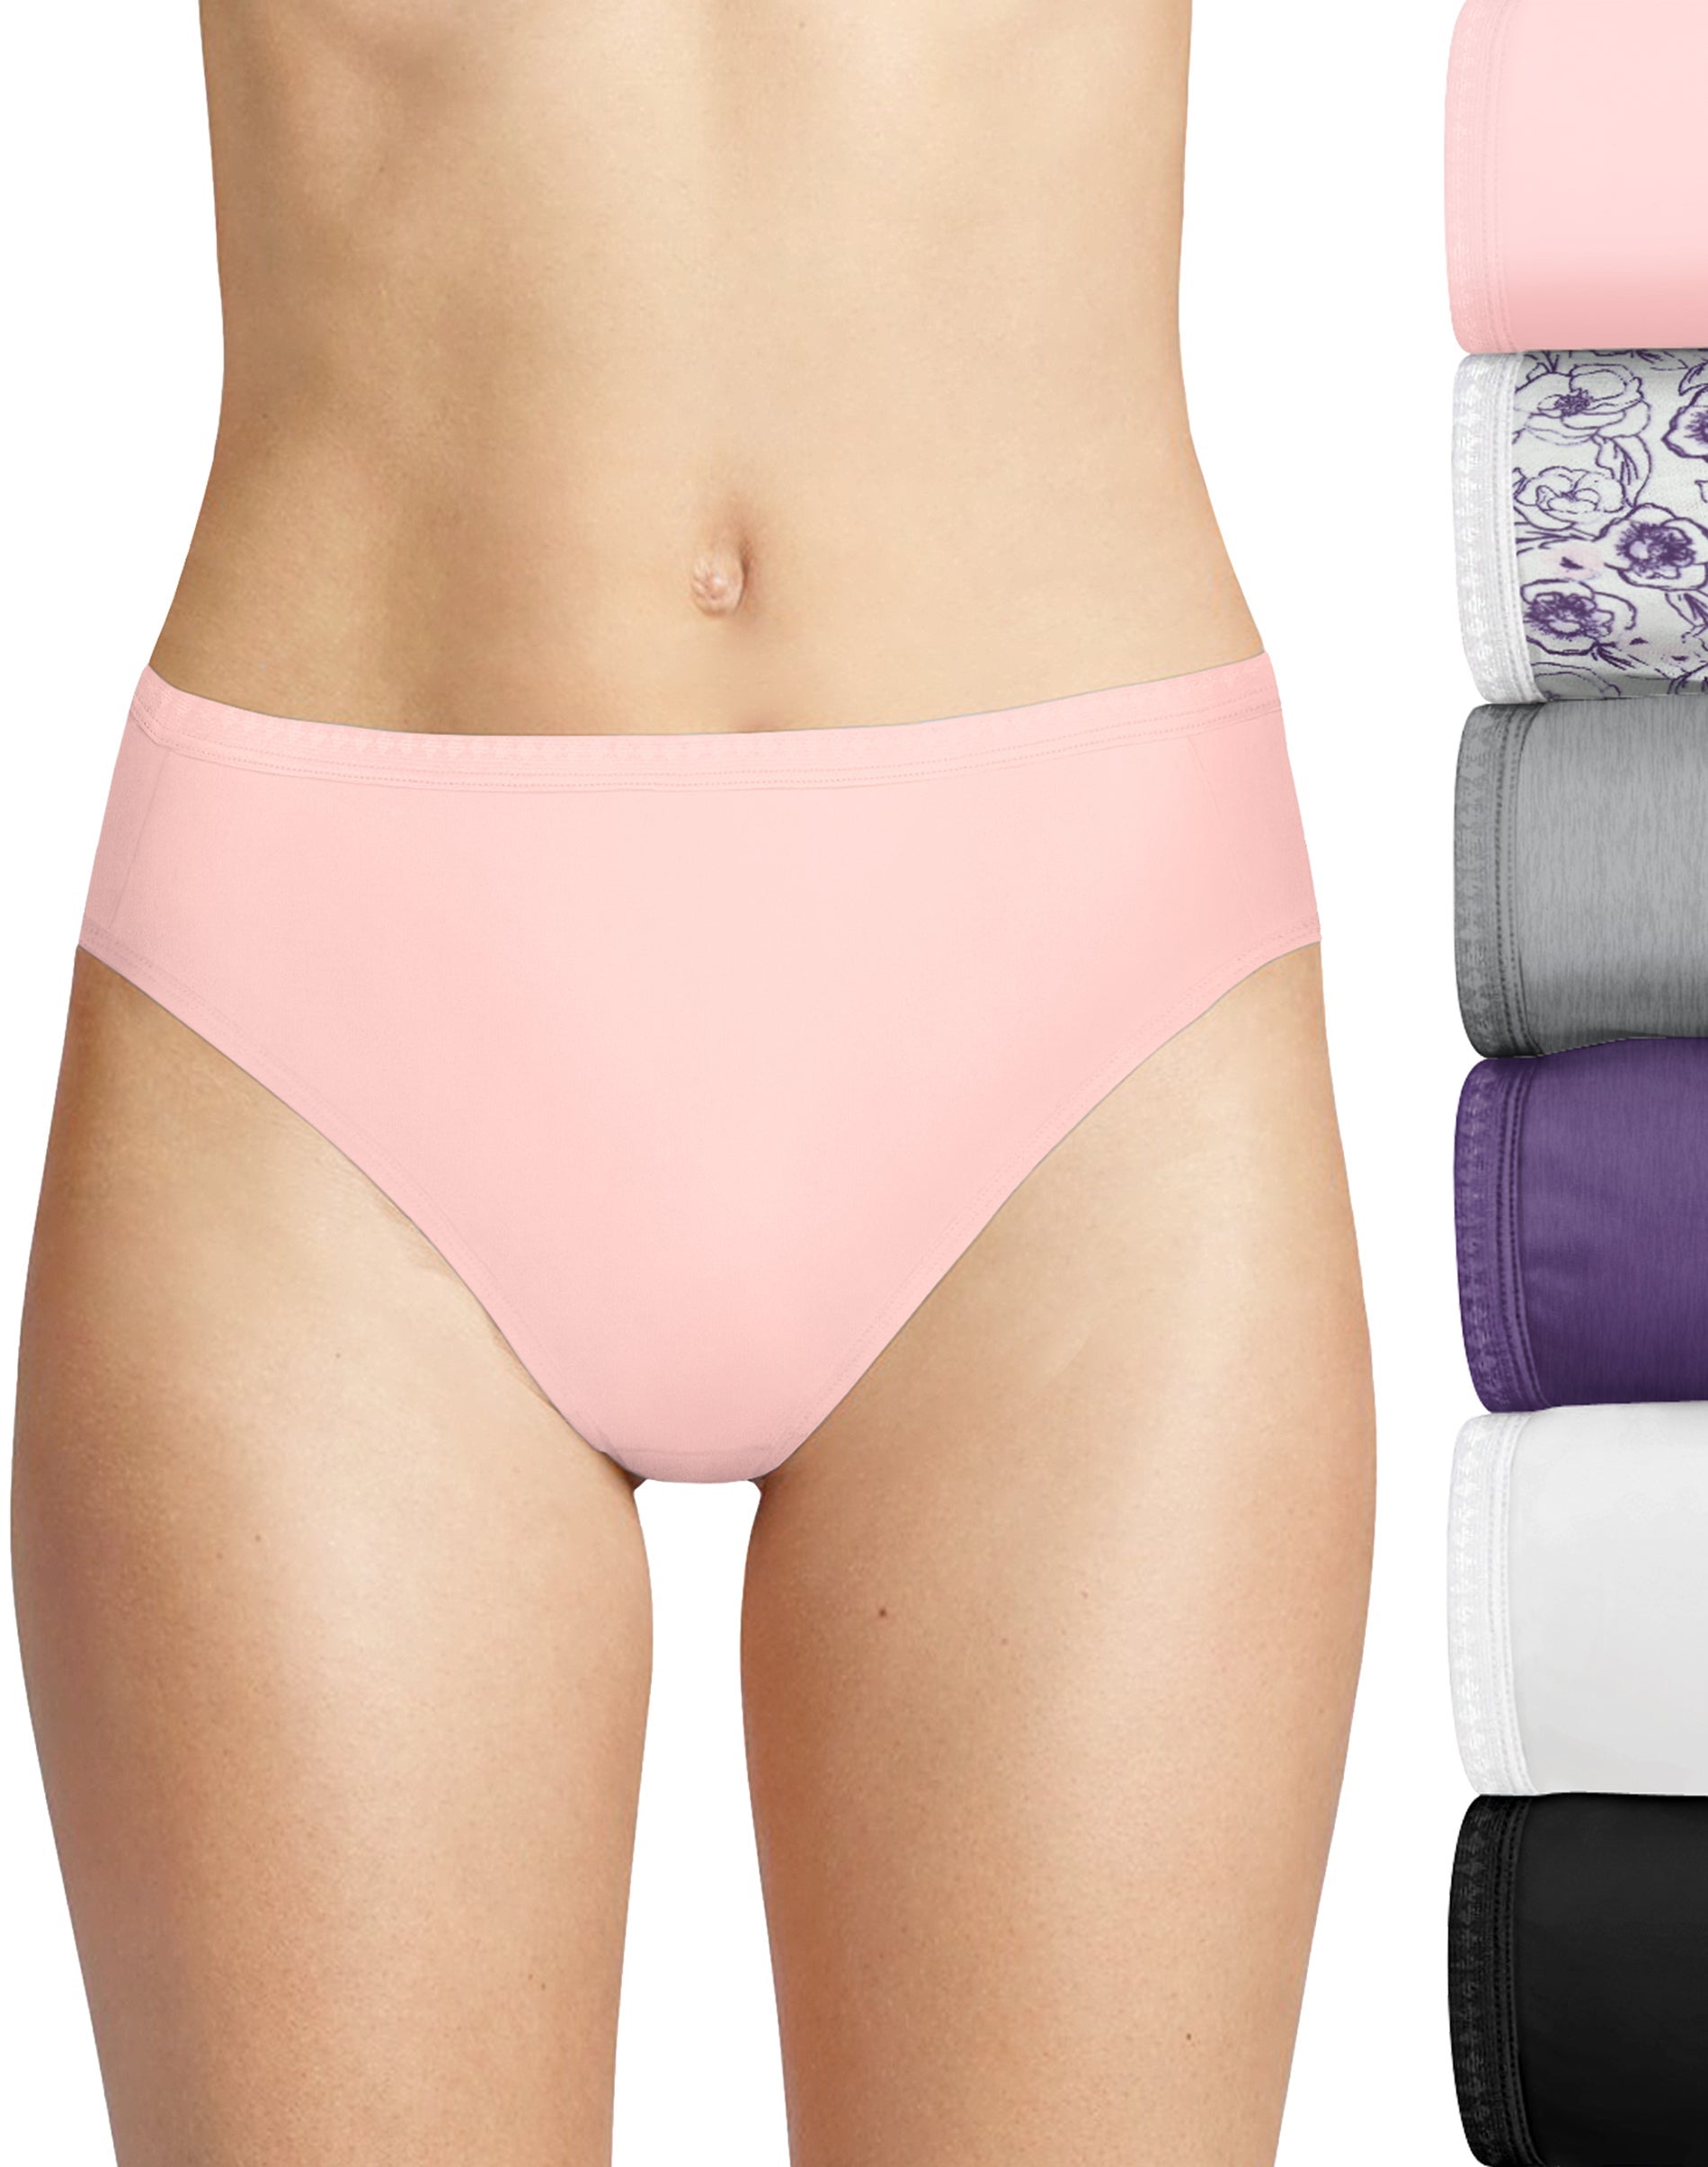 Hanes, Intimates & Sleepwear, Hanes 6 Pack Briefs Size Medium 0 Cotton  Underwear Womens New Unopened